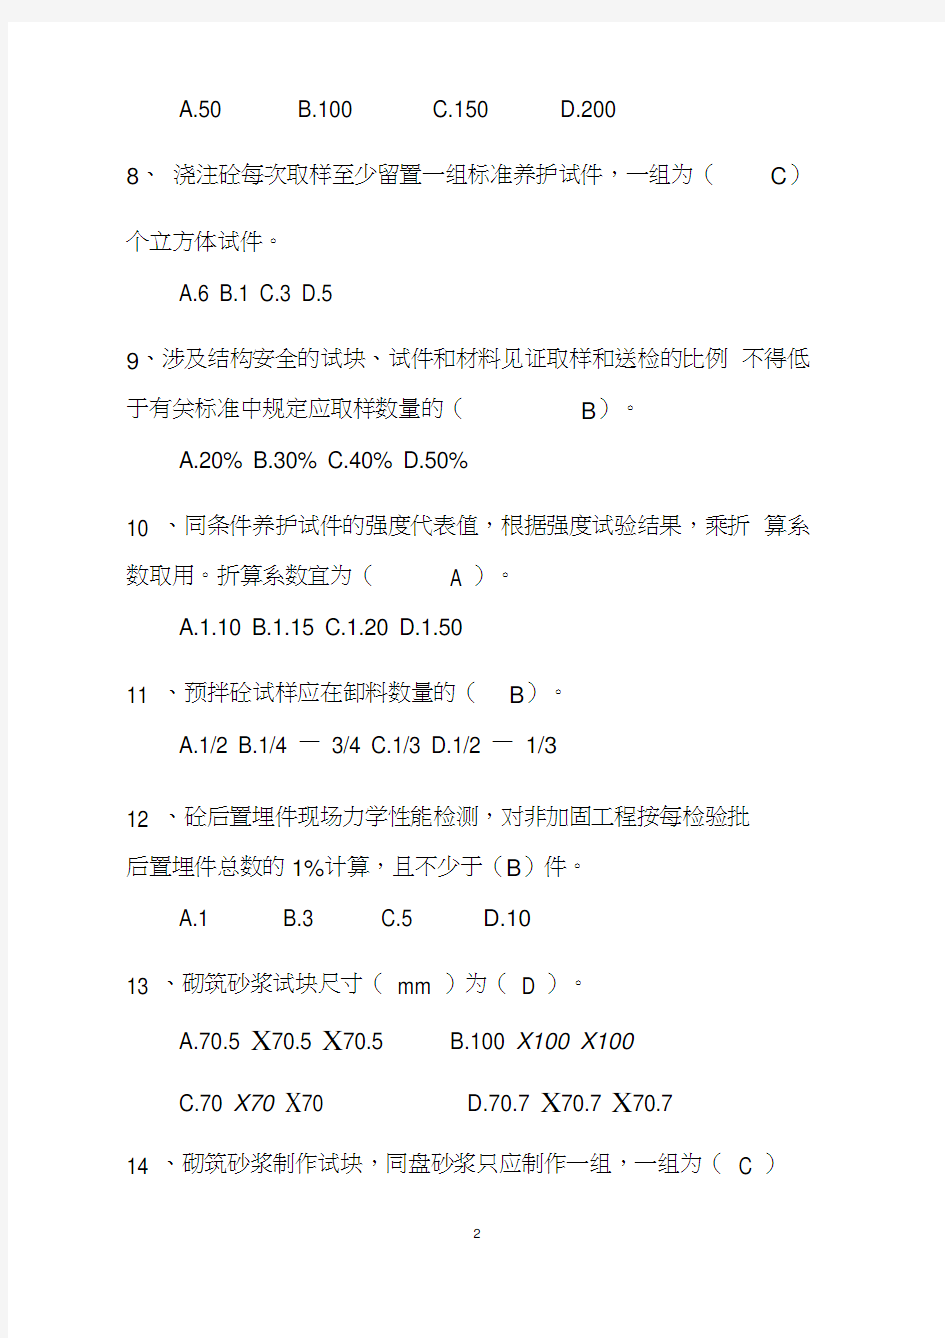 海南省2015年见证员考试题